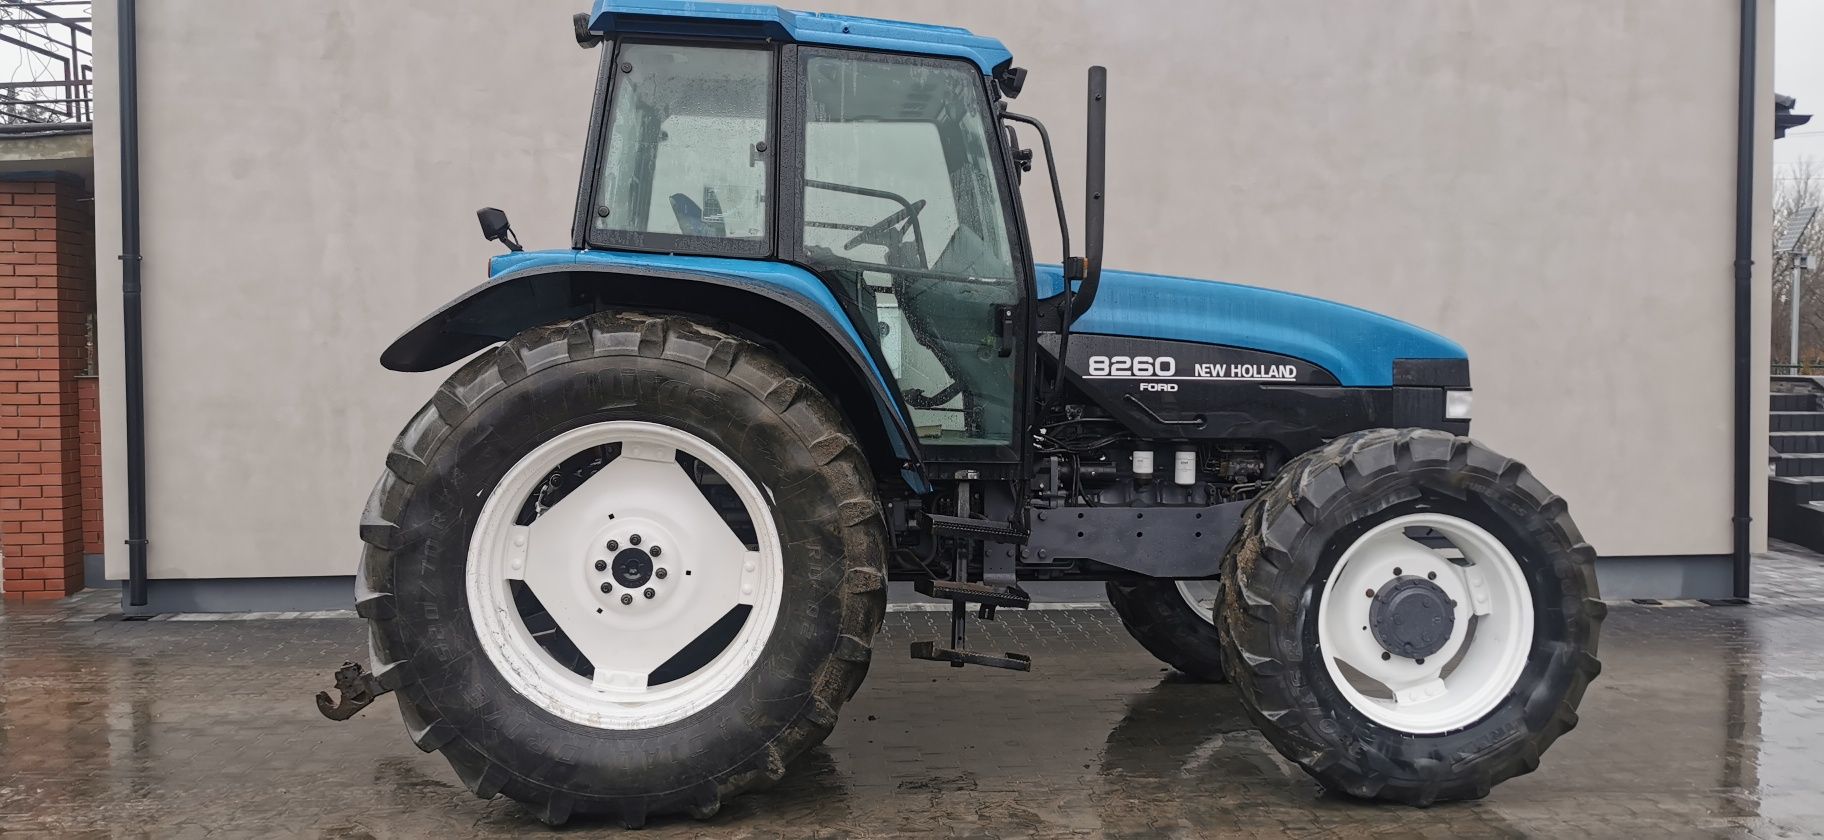 New holand 8260, new holland tm 120, super traktor koniecznie zobacz!!